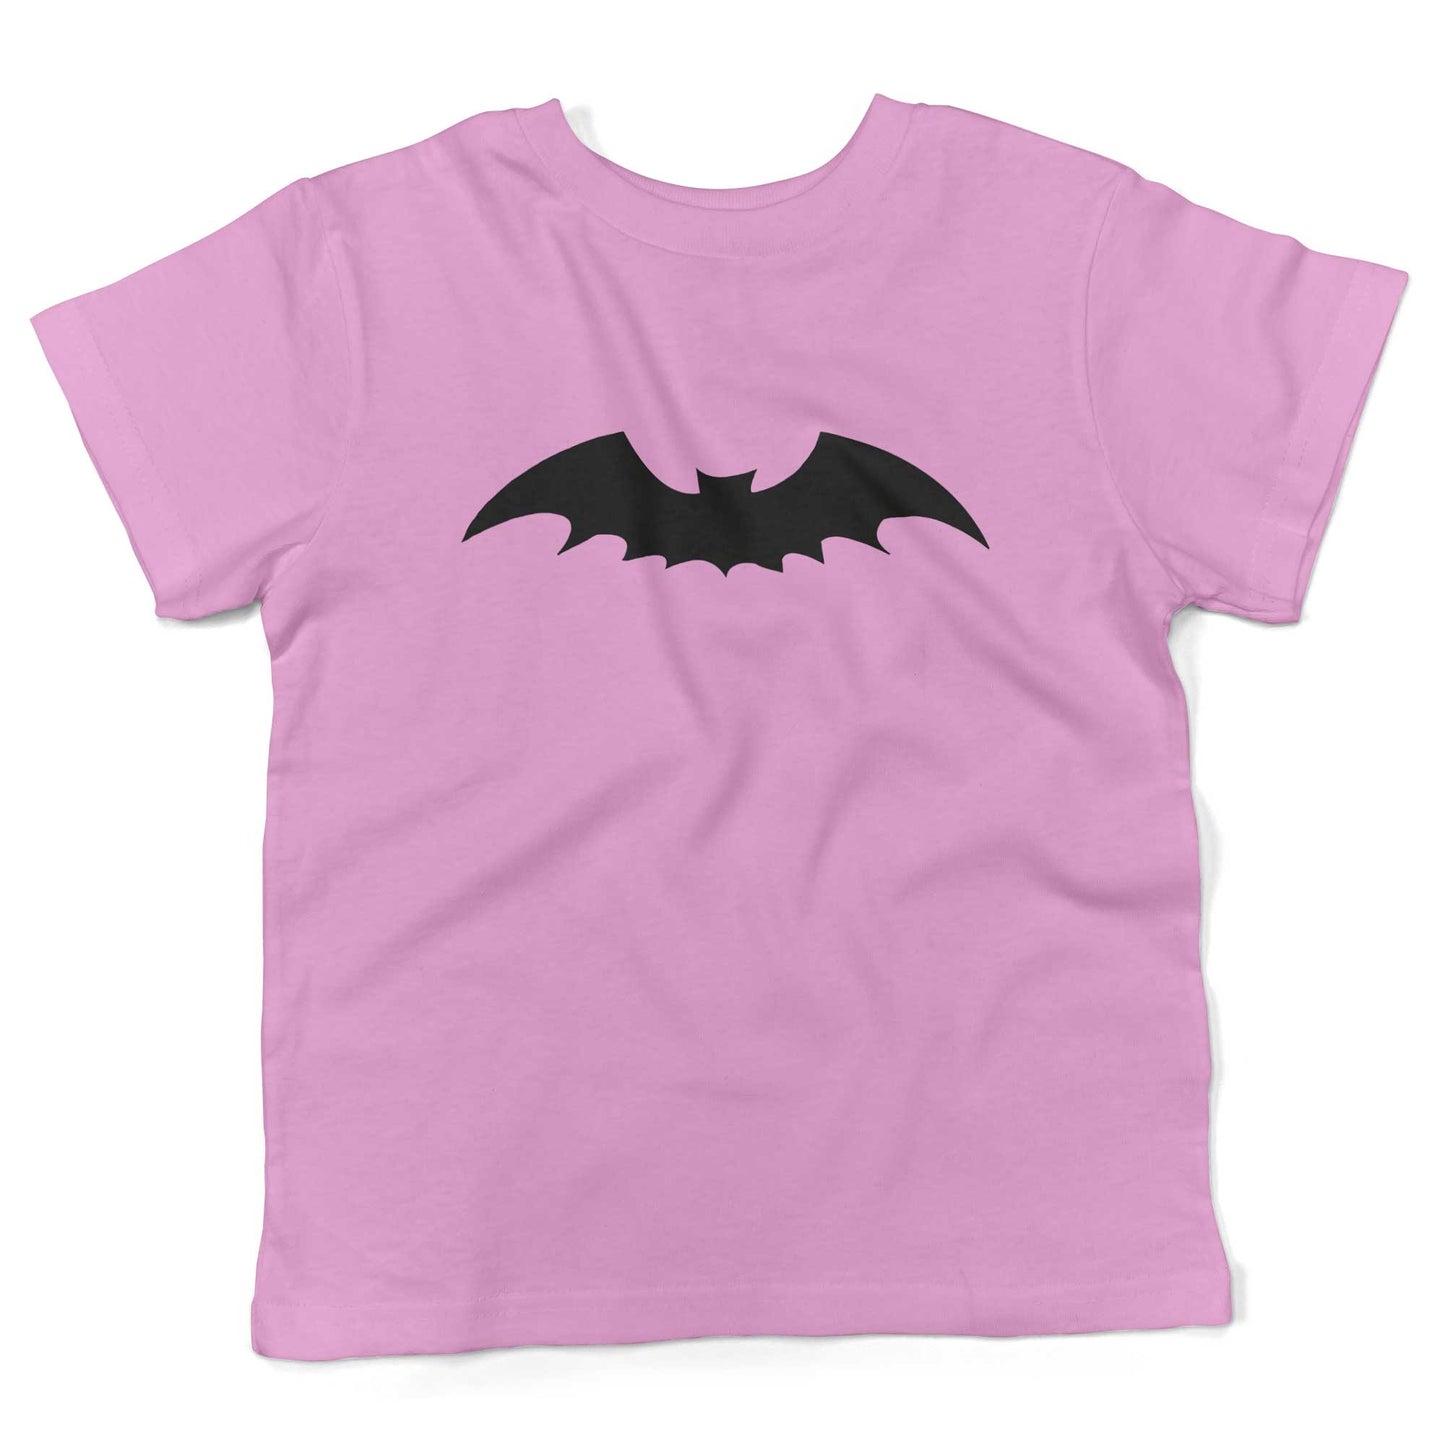 Gothic Bat Toddler Shirt-Organic Pink-2T